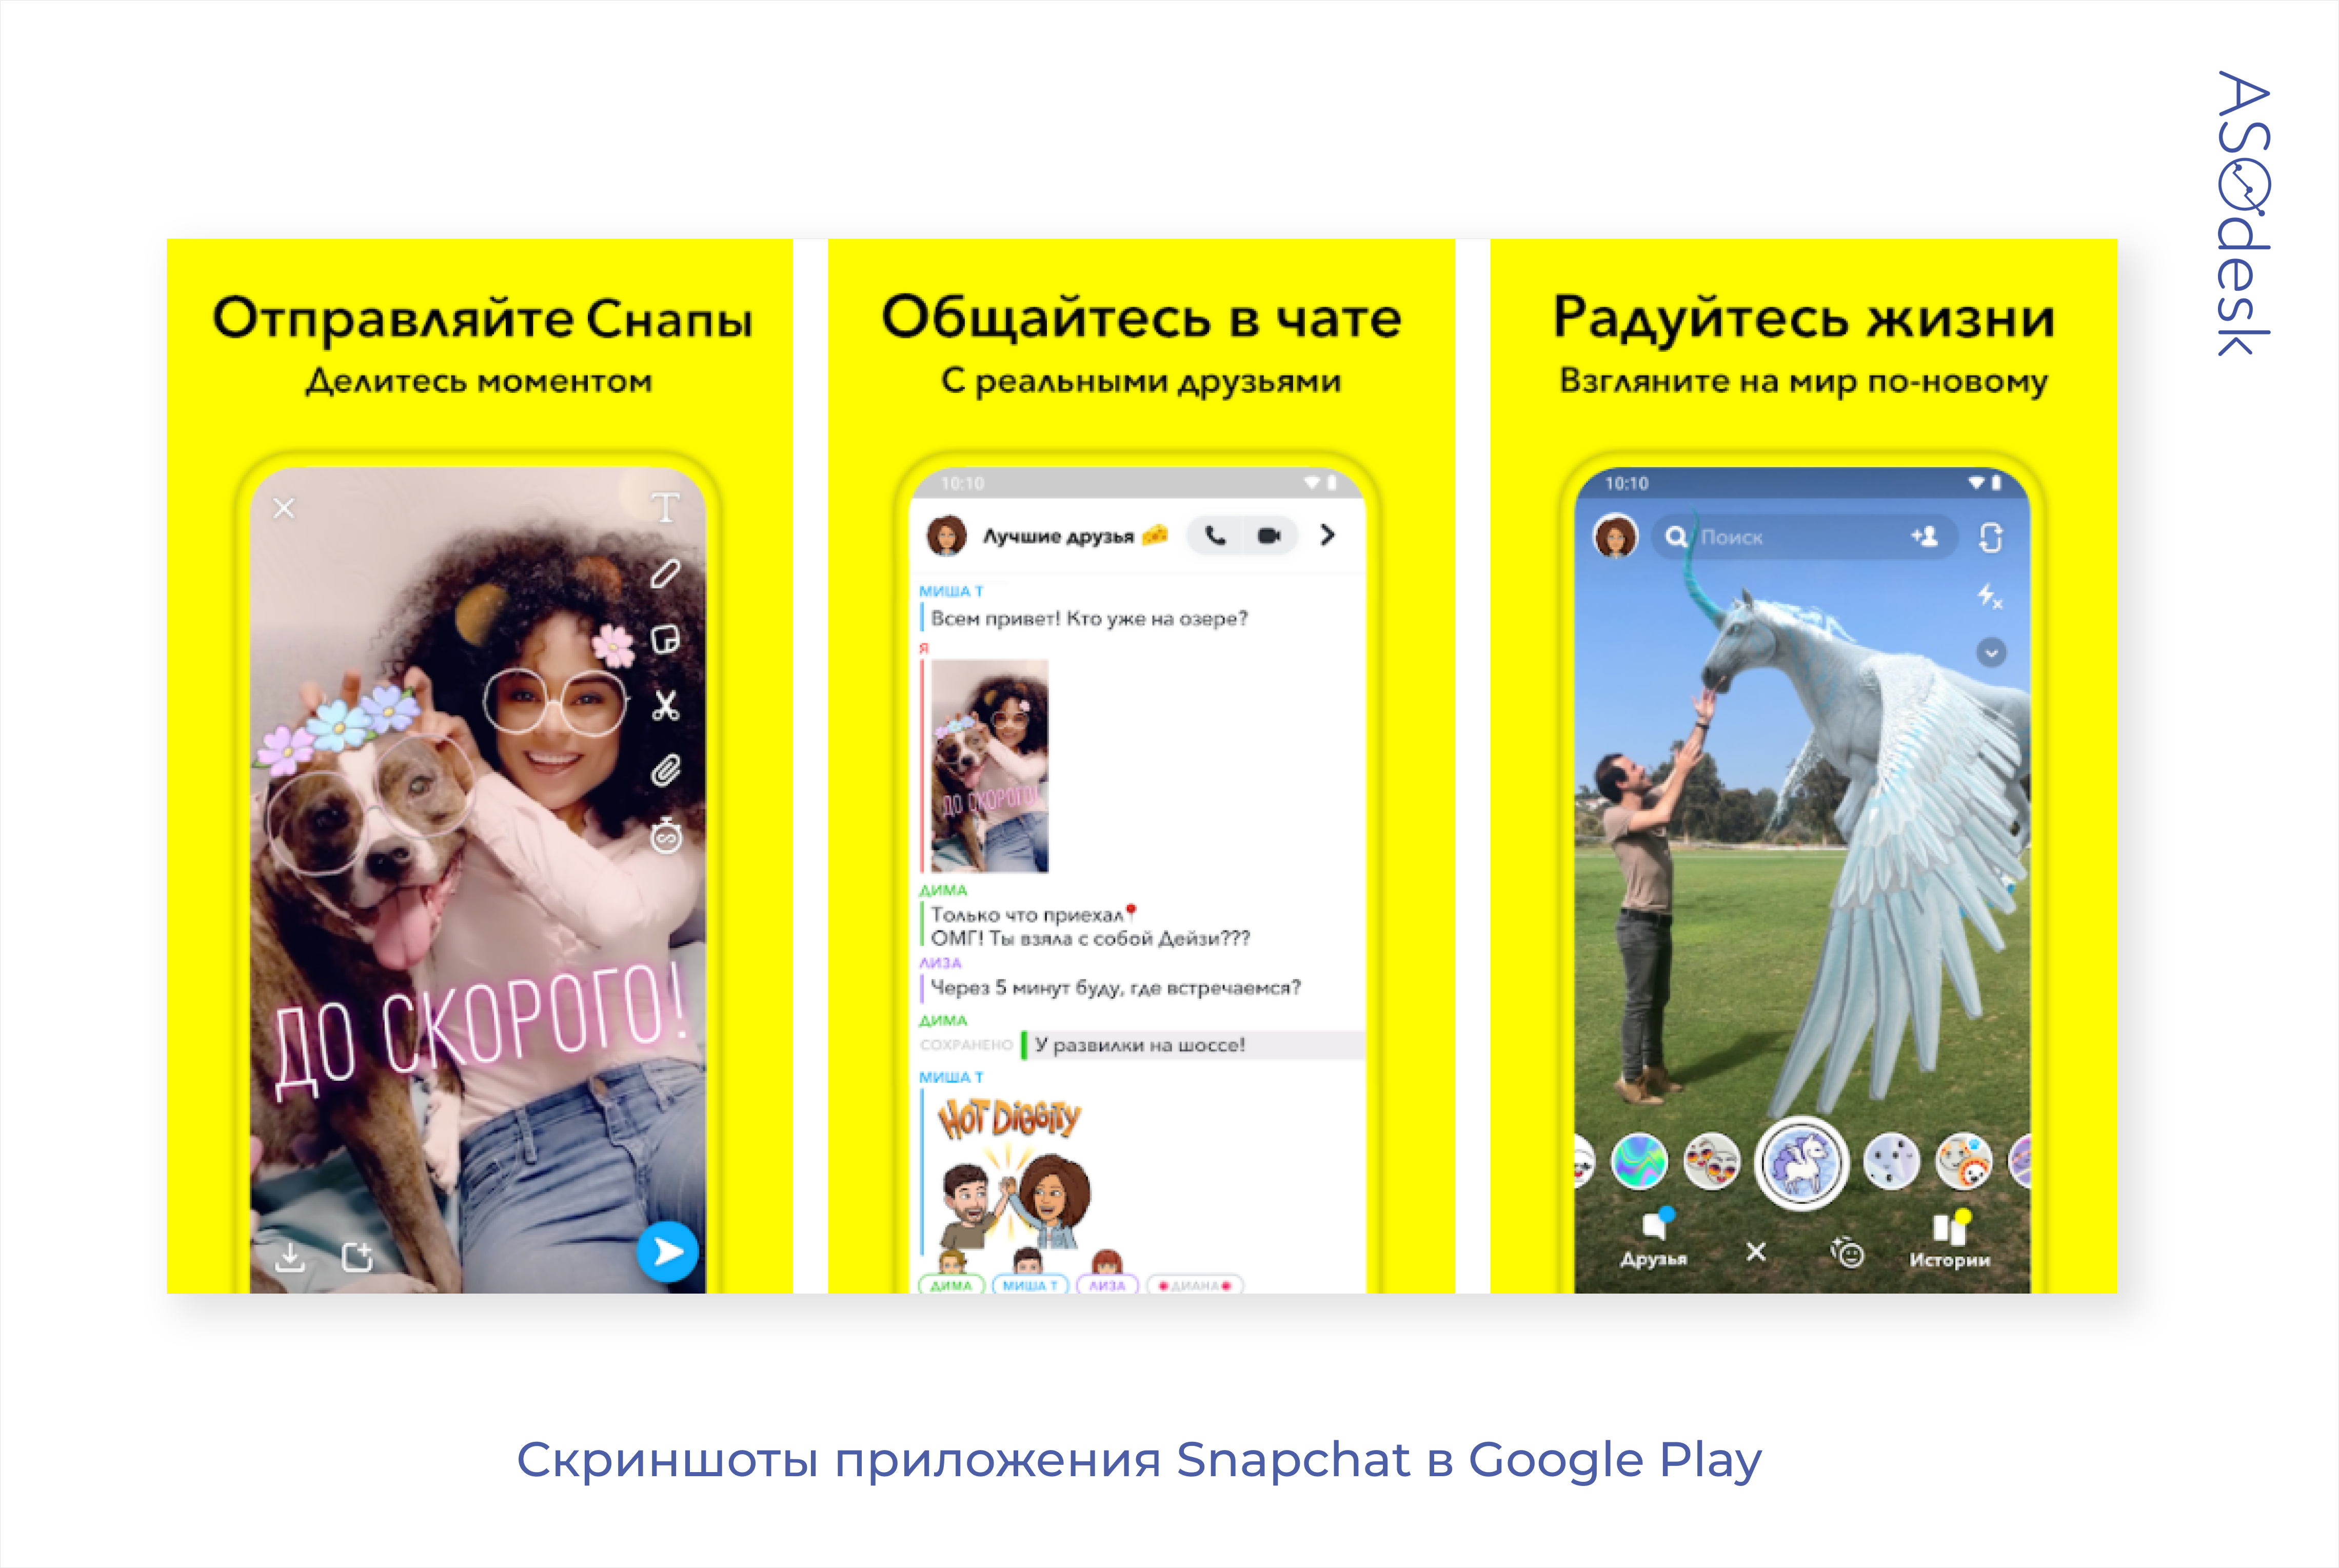 Скриншоты со страницы приложения Snapchat в Google Play